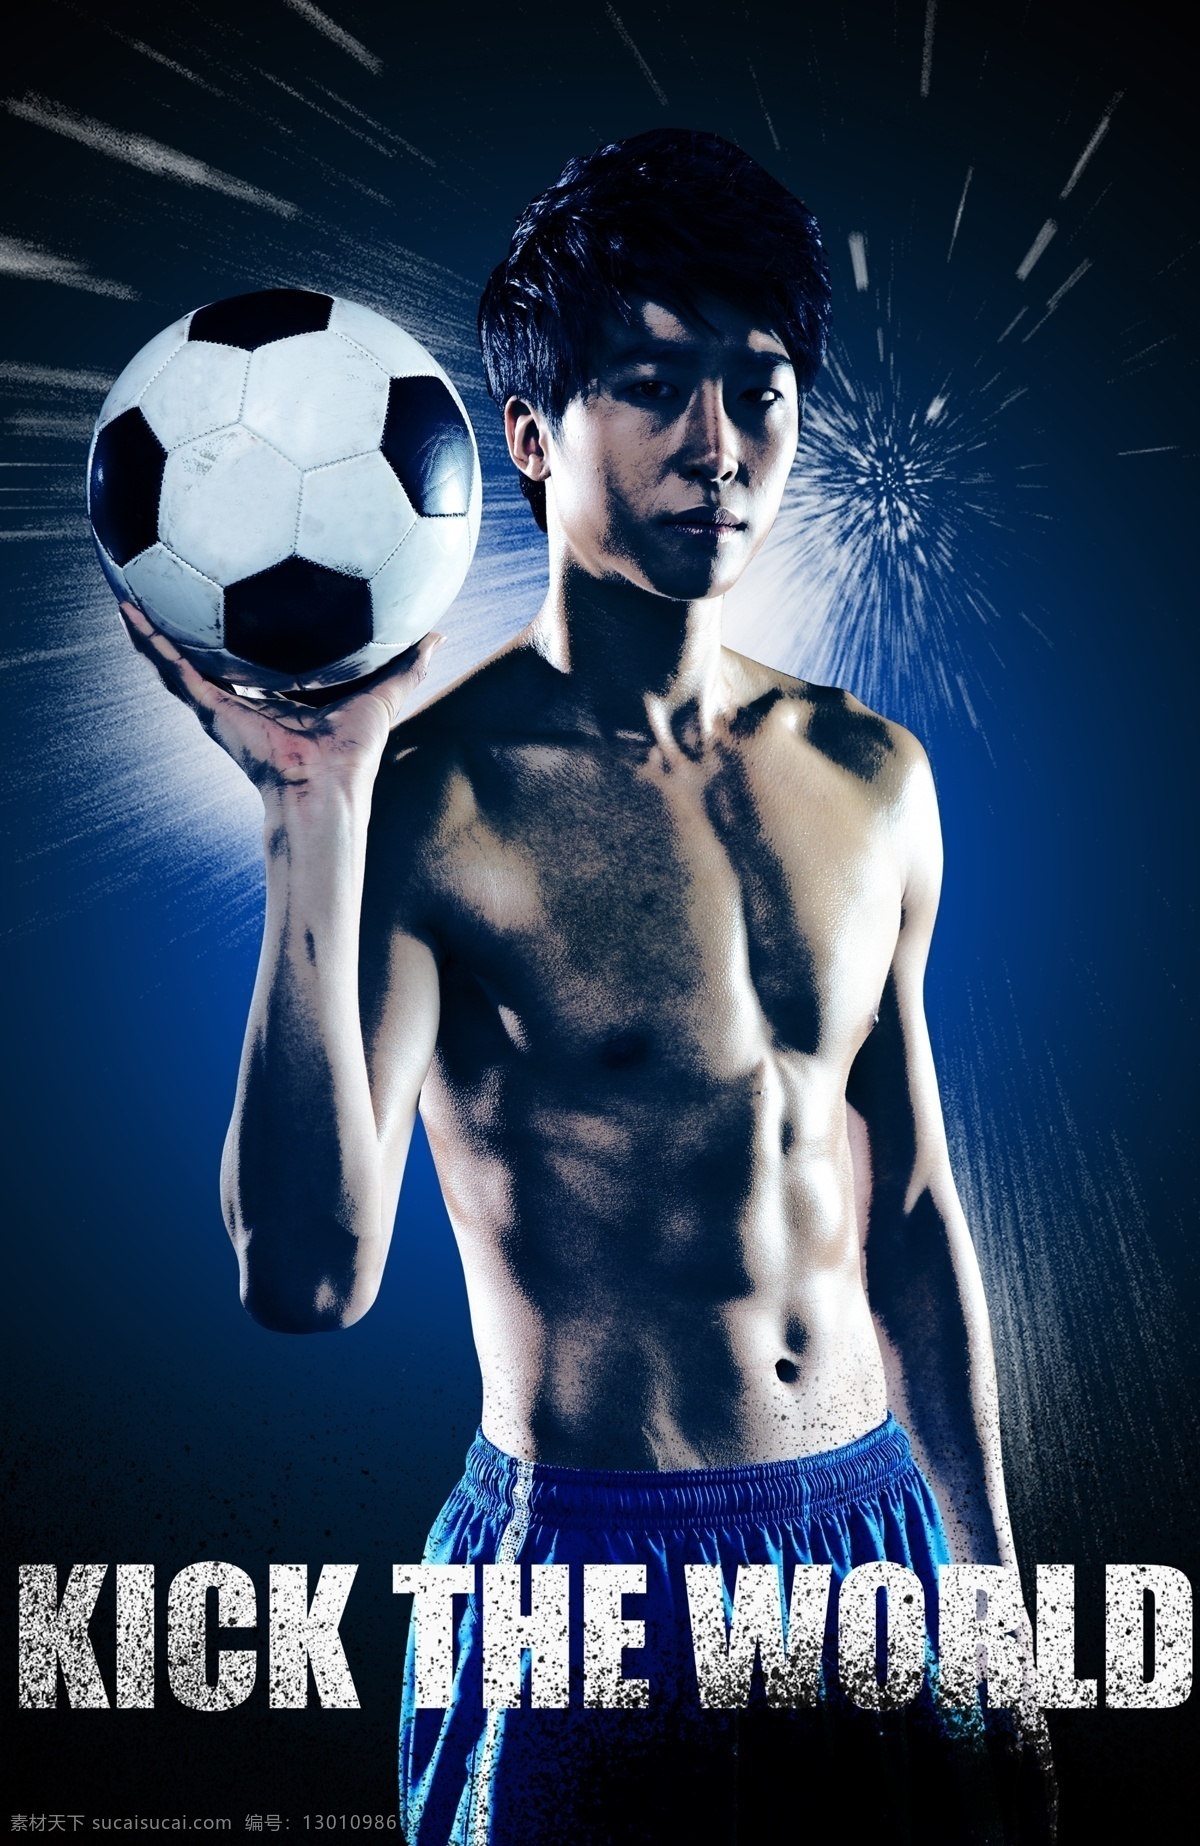 手 托 足球 男人 运动 户外运动 踢足球 半裸 手托足球 肌肉 好身材 炫彩背景 广告设计模板 psd素材 黑色